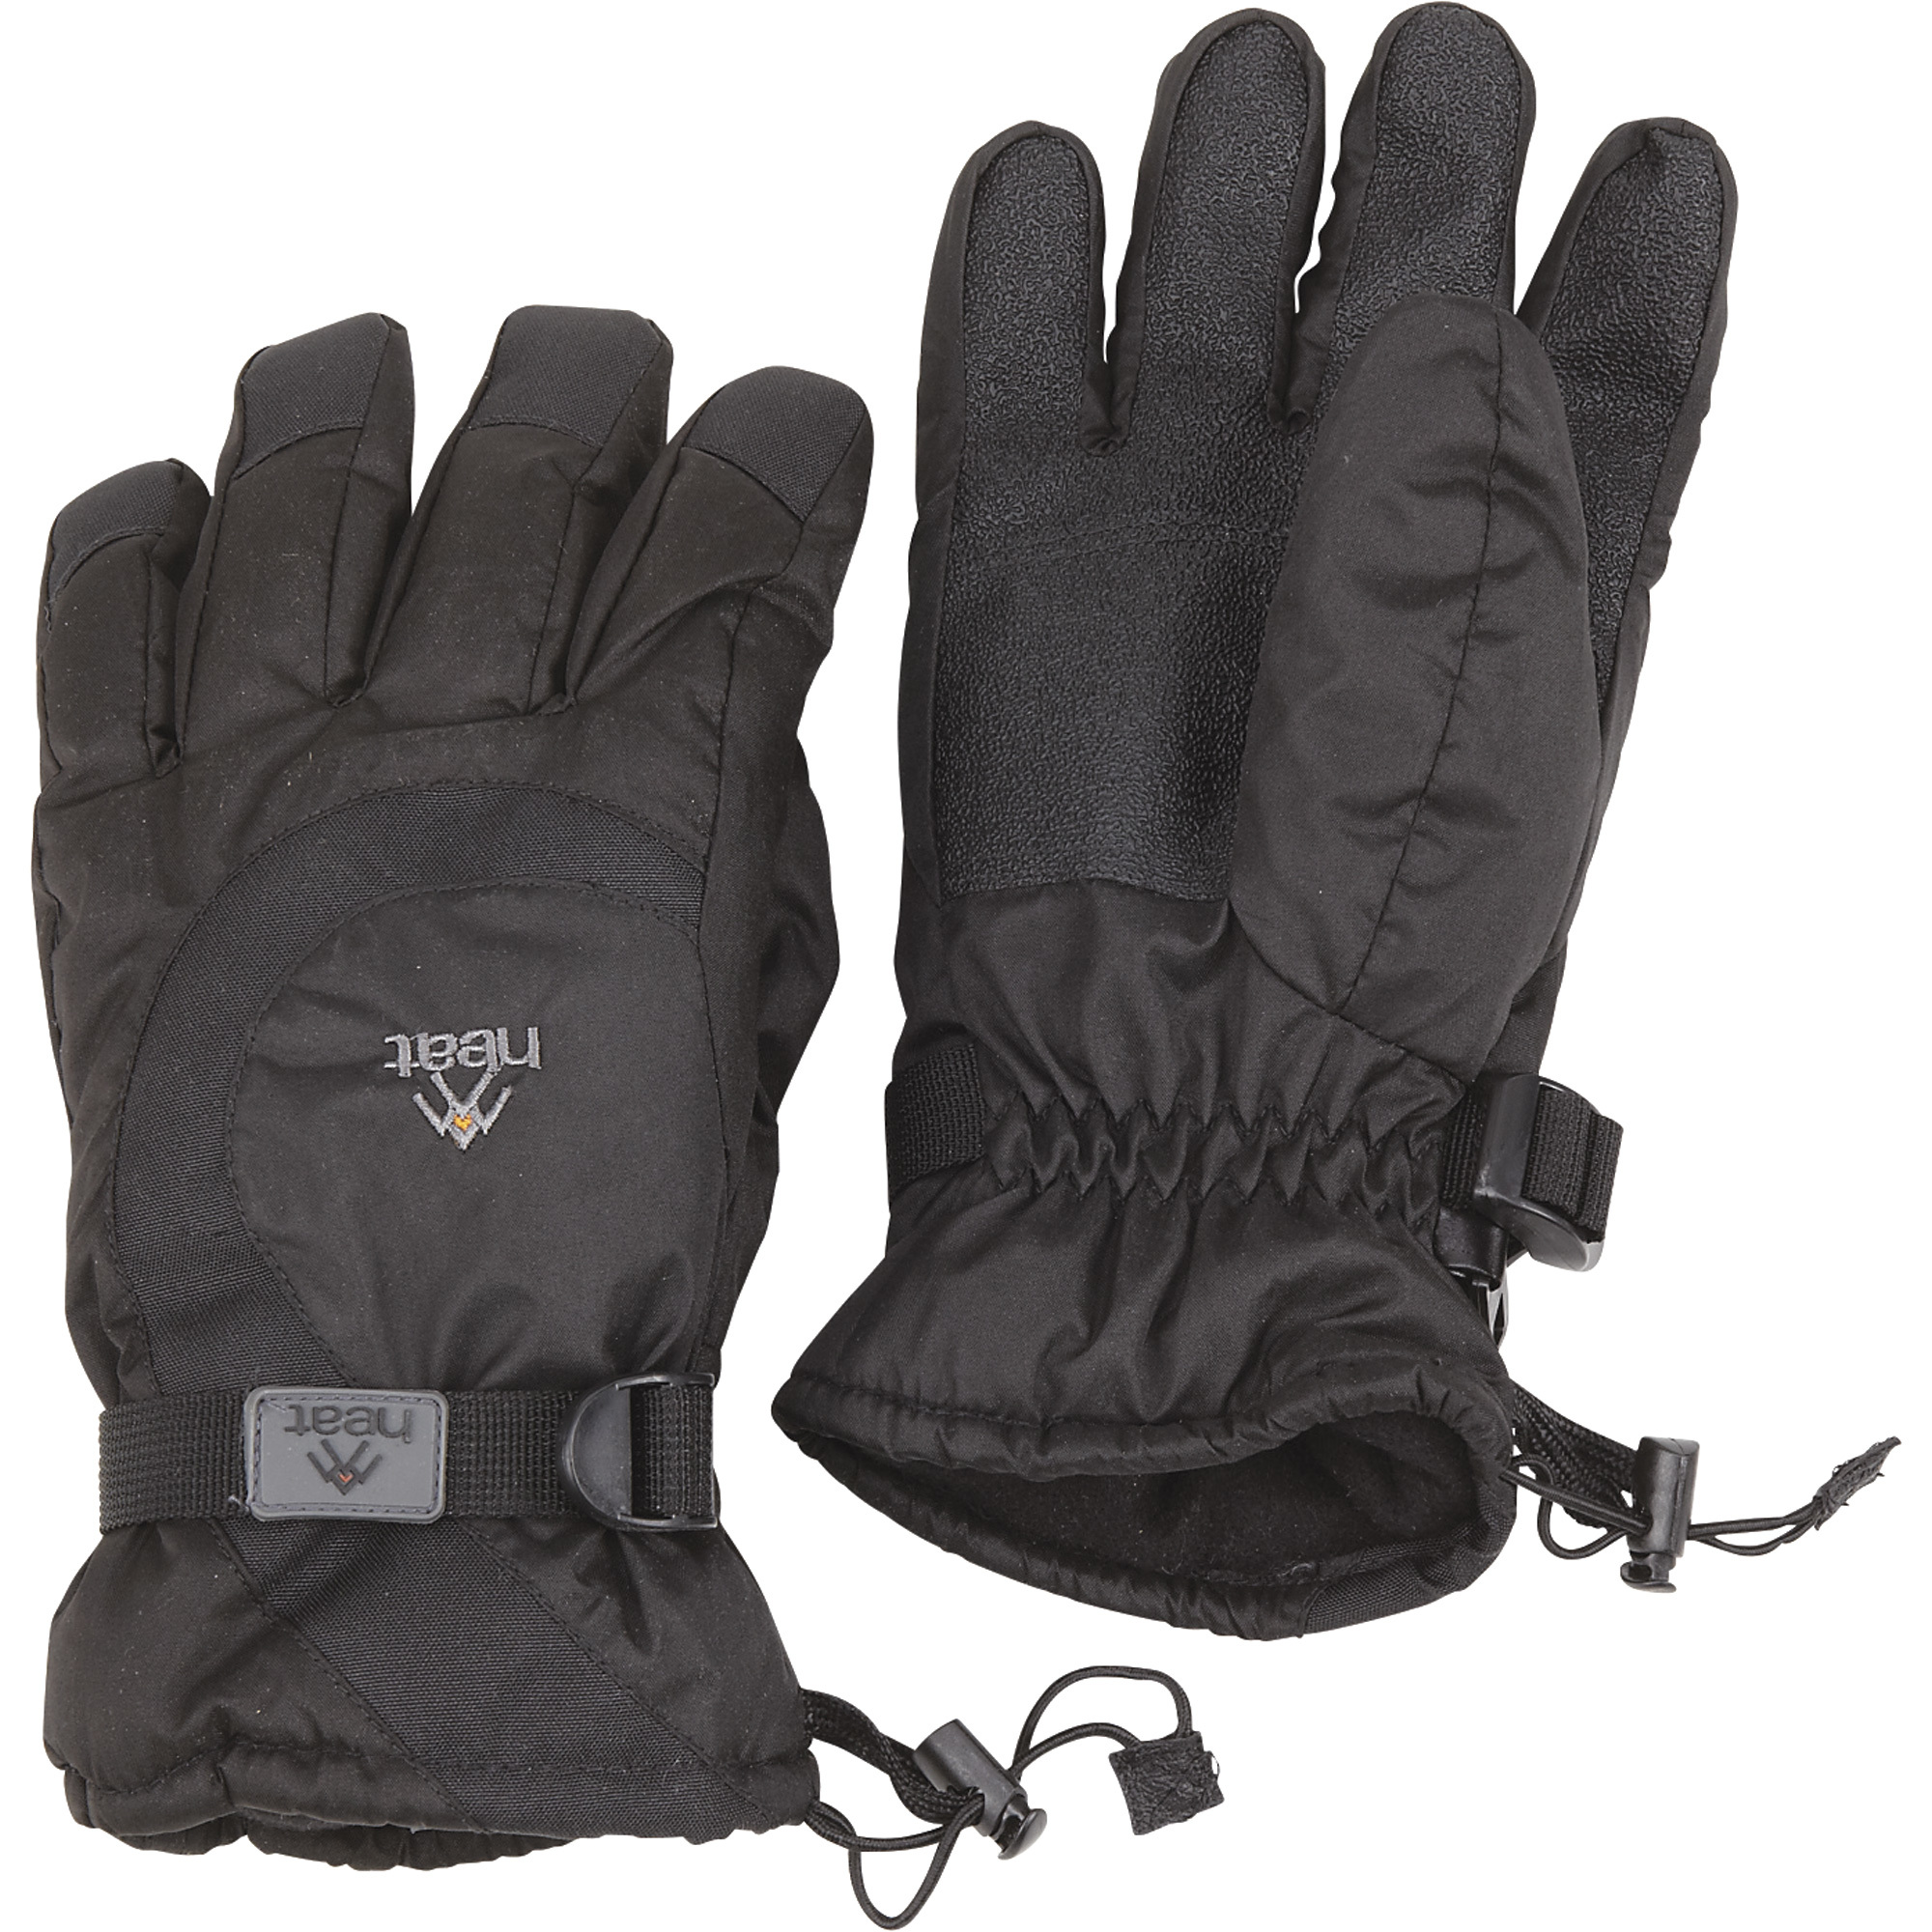 Waterproof Insulated Winter Gauntlet Glove â Large, Model 4GHT24